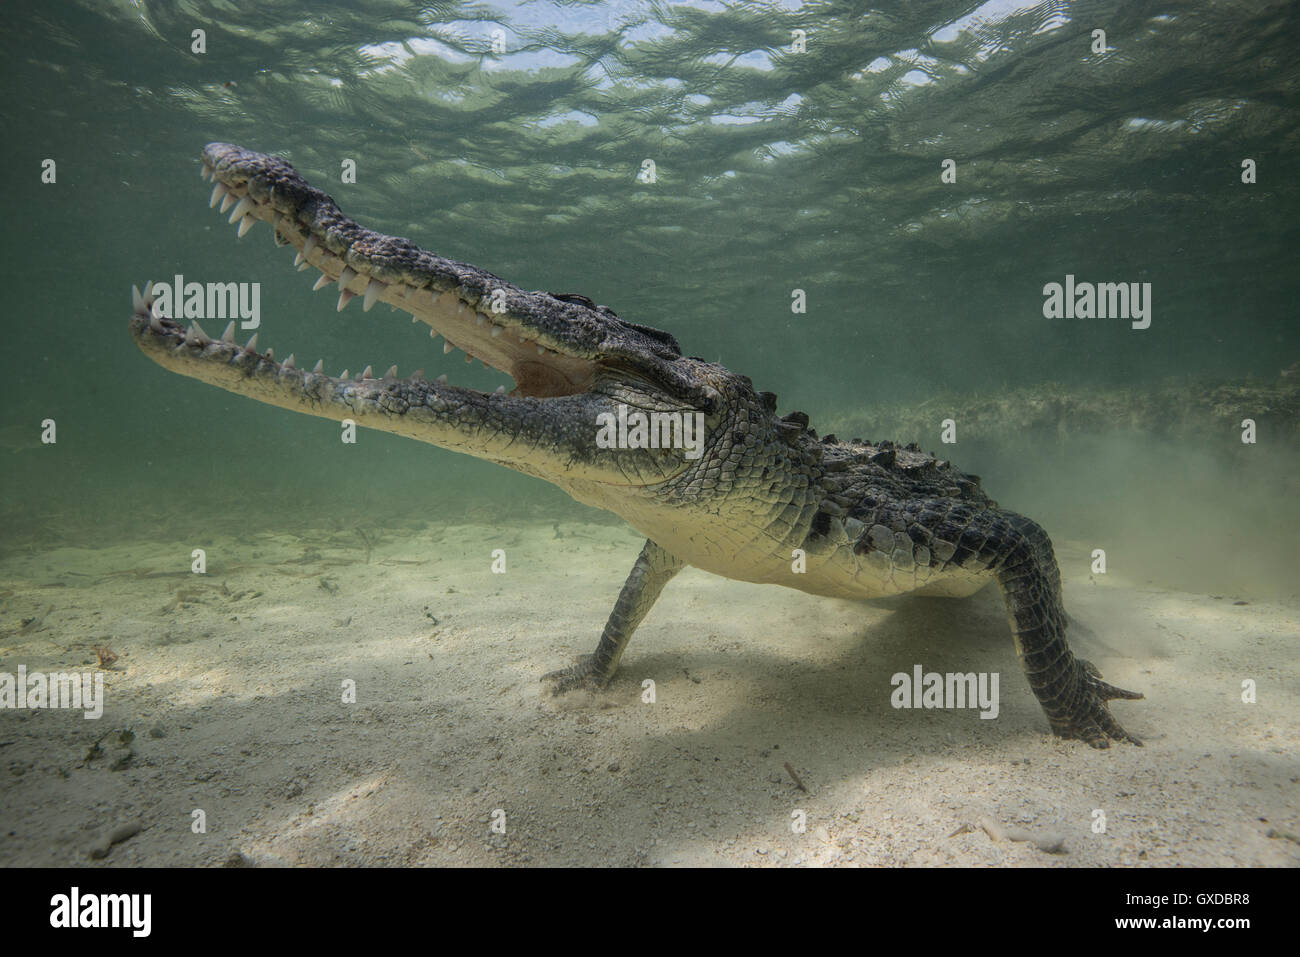 Territorial de cocodrilo americano (Crocodylus acutus) sobre fondos marinos, Bancos Chinchorro, México Foto de stock